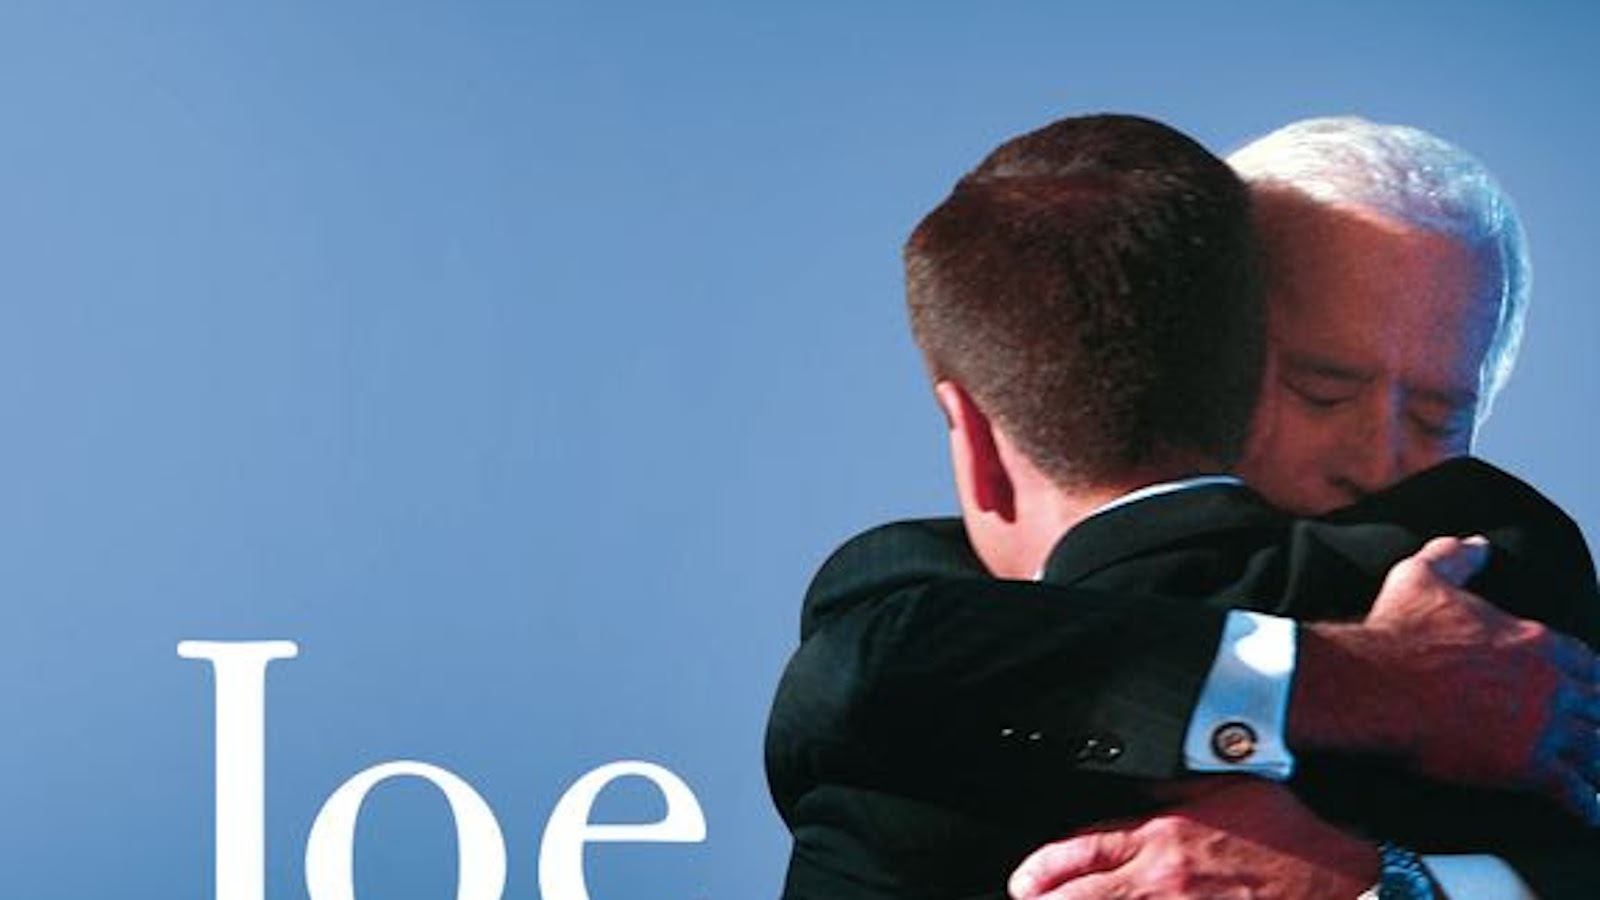 Kuvassa on osa kansikuvasta ja siinä oikealla Joe Biden on halaamassa poikaansa, joka on selin.  Kuvan taustaväri on sininen.